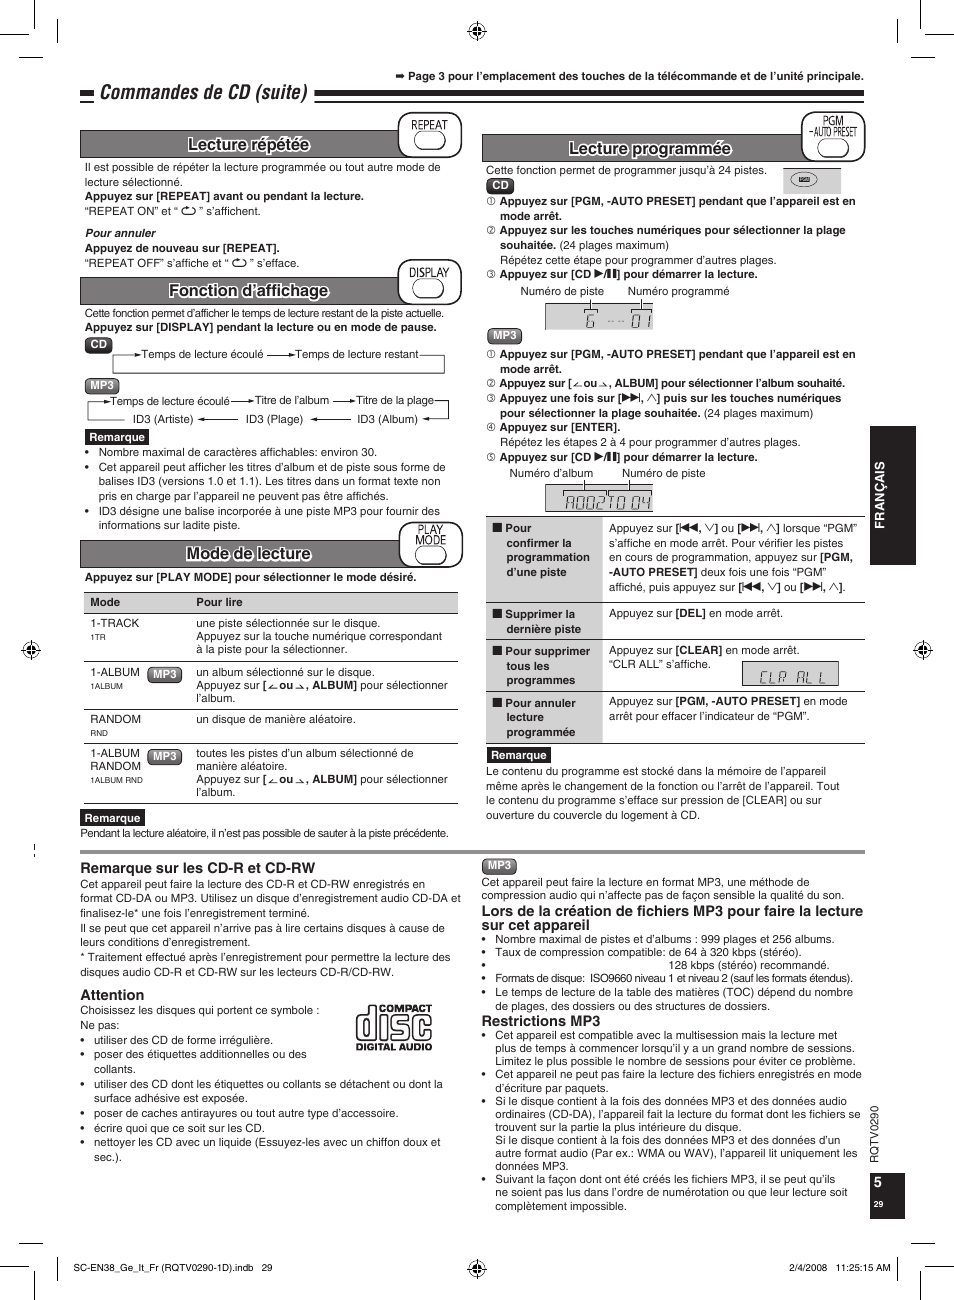 Commandes de cd (suite), Lecture programmée | Panasonic SCEN38 Benutzerhandbuch | Seite 29 / 36